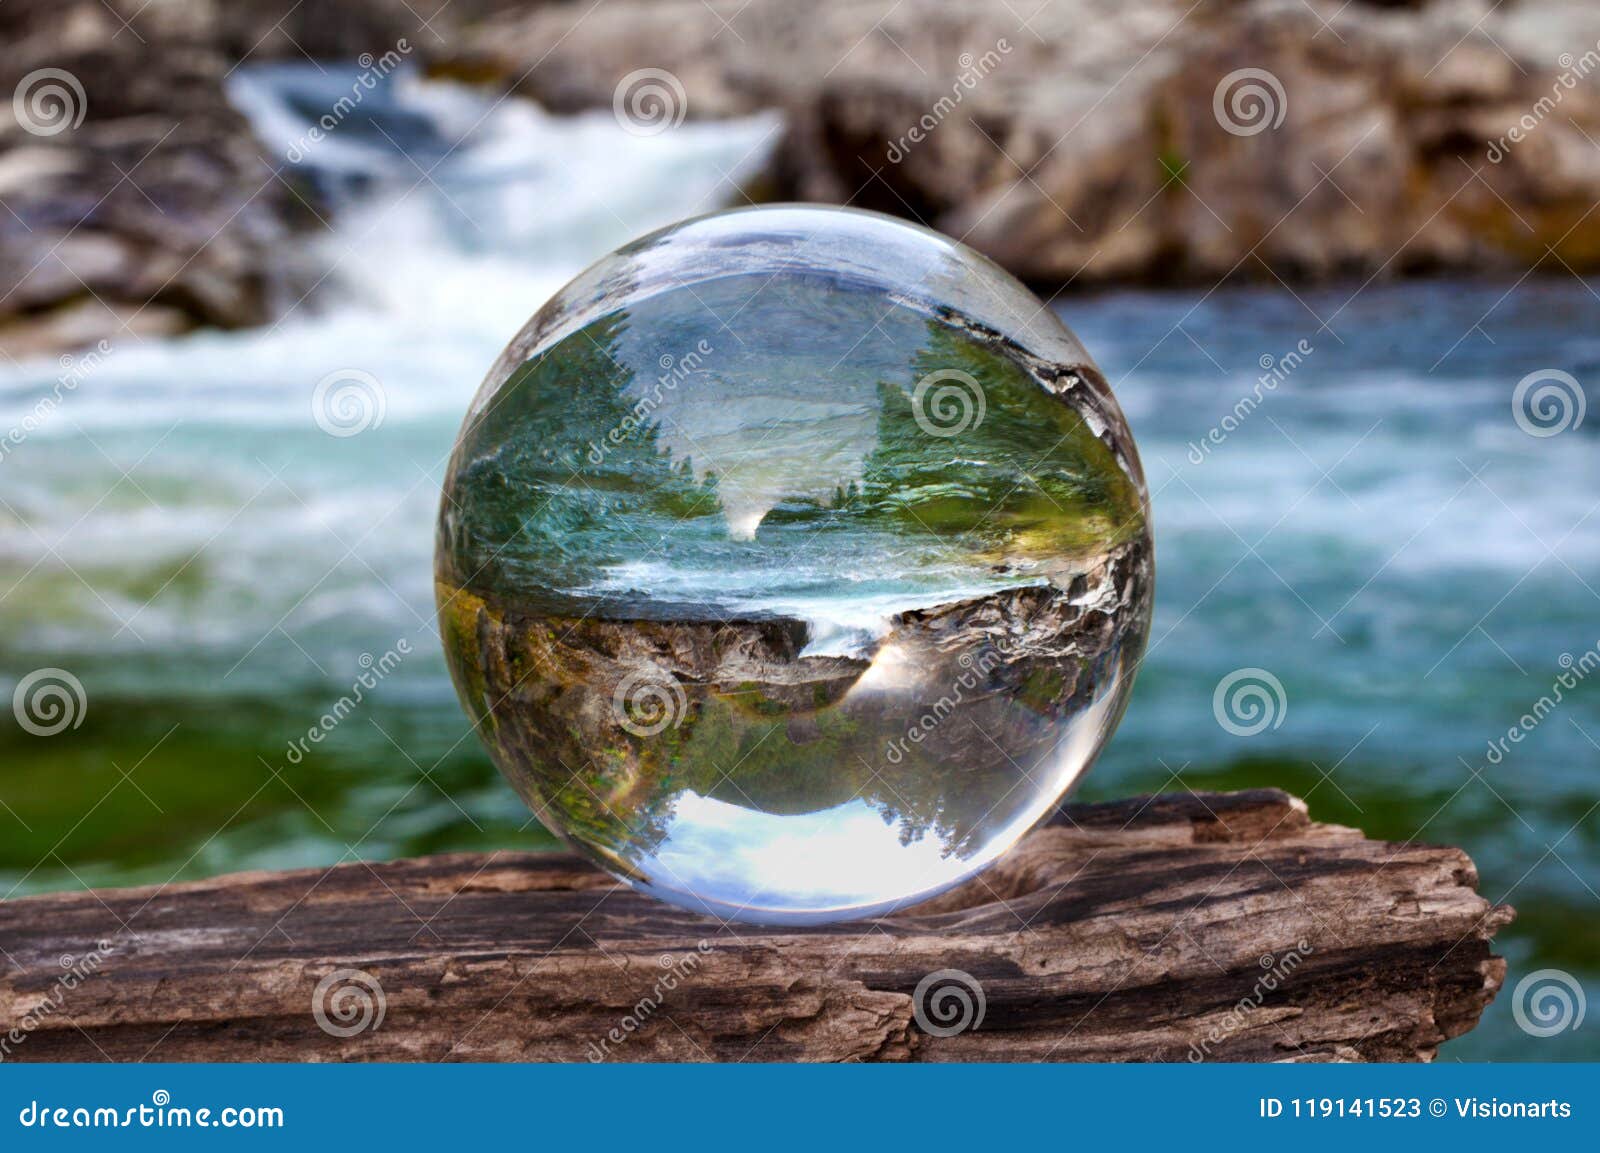 La Sphère De Boule De Verre Cristal Indique Le Paysage De Cascade Image  stock - Image du bulle, forme: 119141523